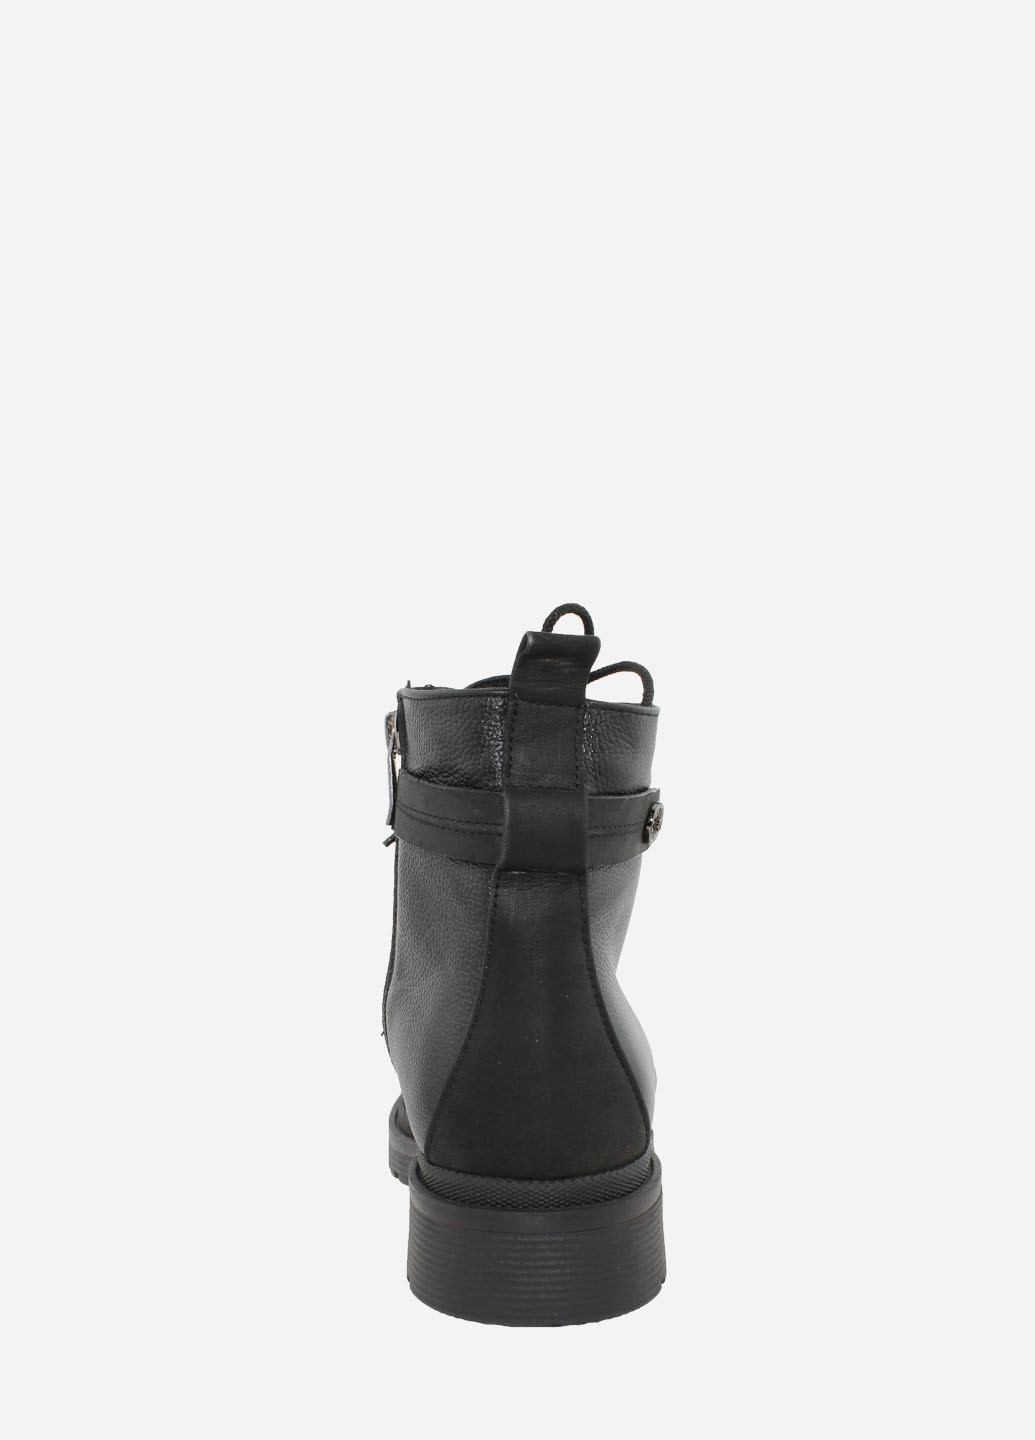 Зимние ботинки re2566-22 черный El passo